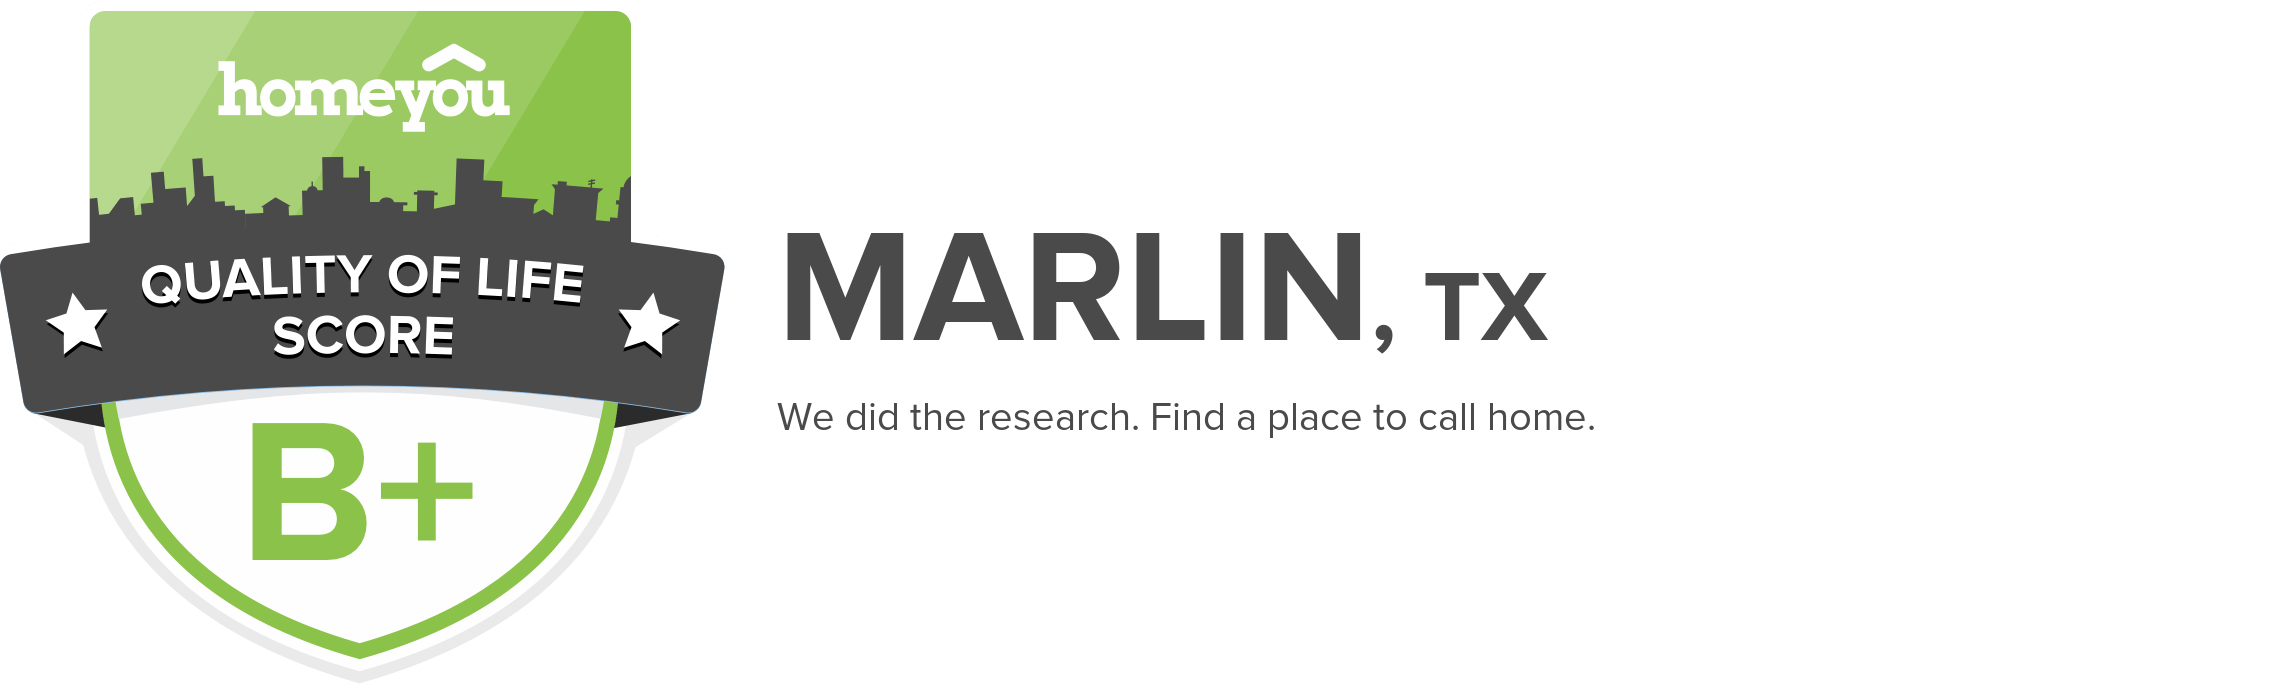 Marlin, TX